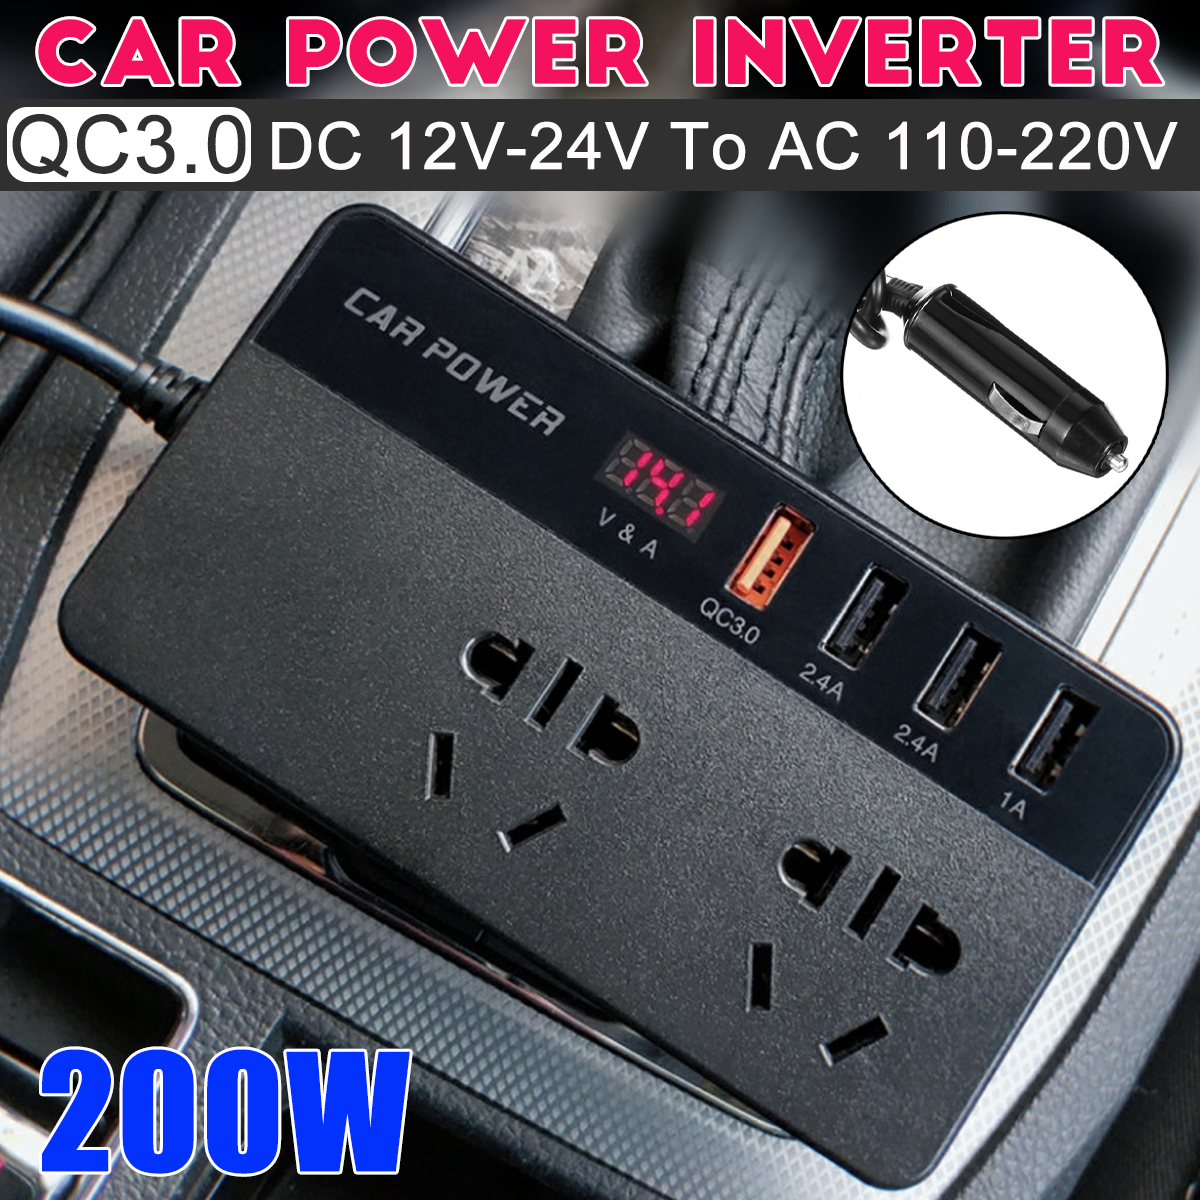 1224V-to-110220V-200W-Car-Power-Inverter-Car-Reverse-Power-Charger-Universal-Multi-function-Inverter-1919645-1